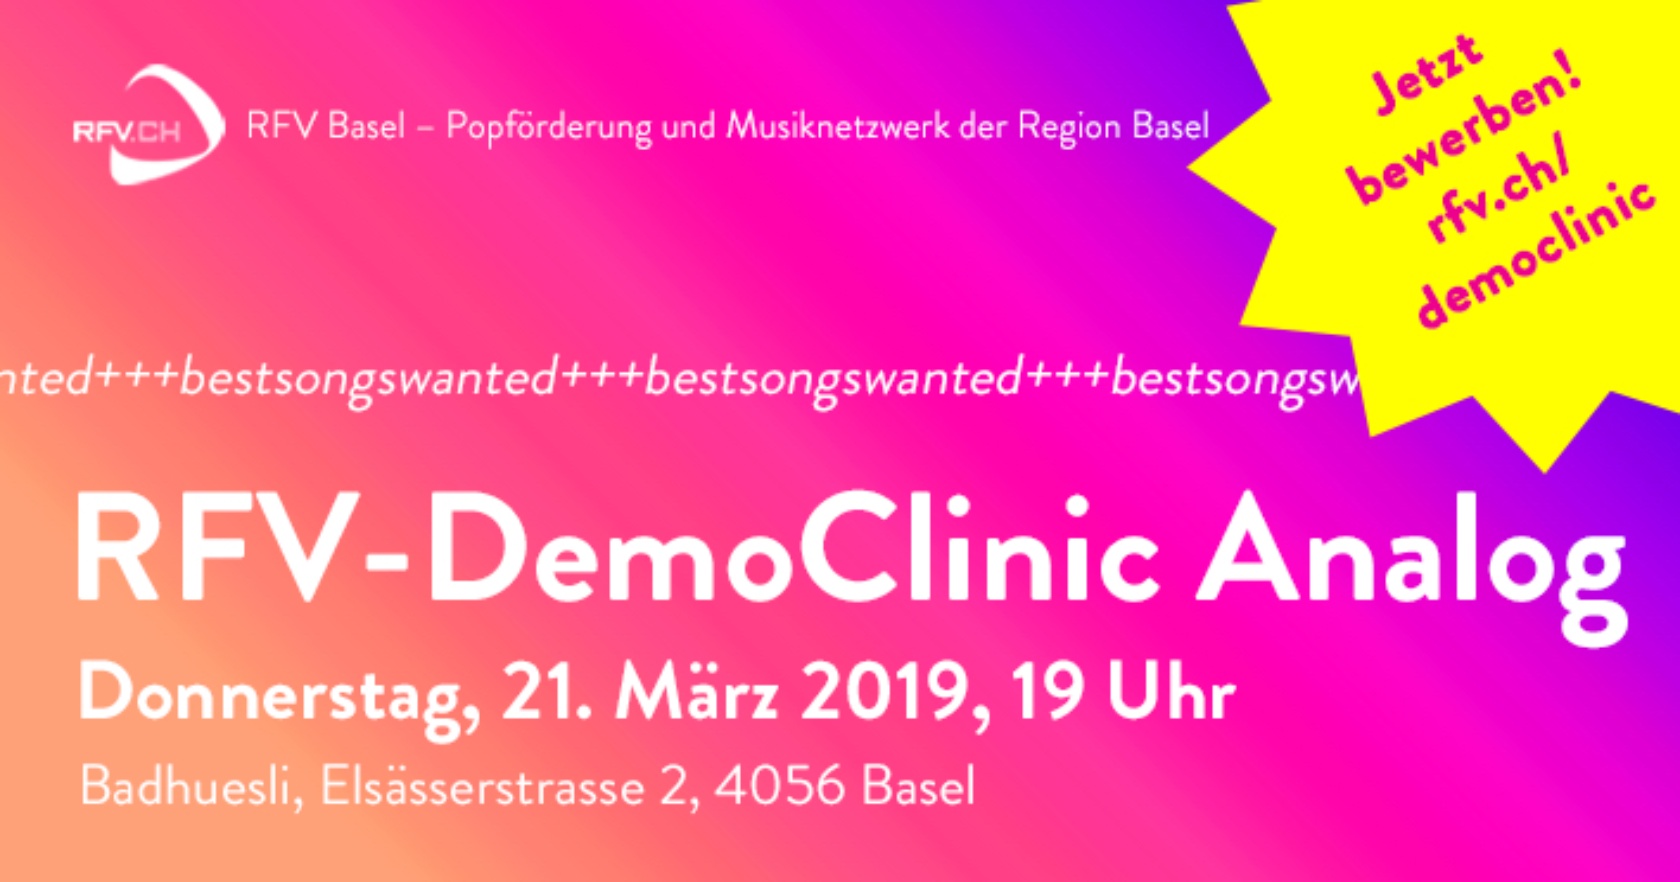 RFV-DemoClinic-Analog-2019-Flyer_Website_Jetzt-bewerben